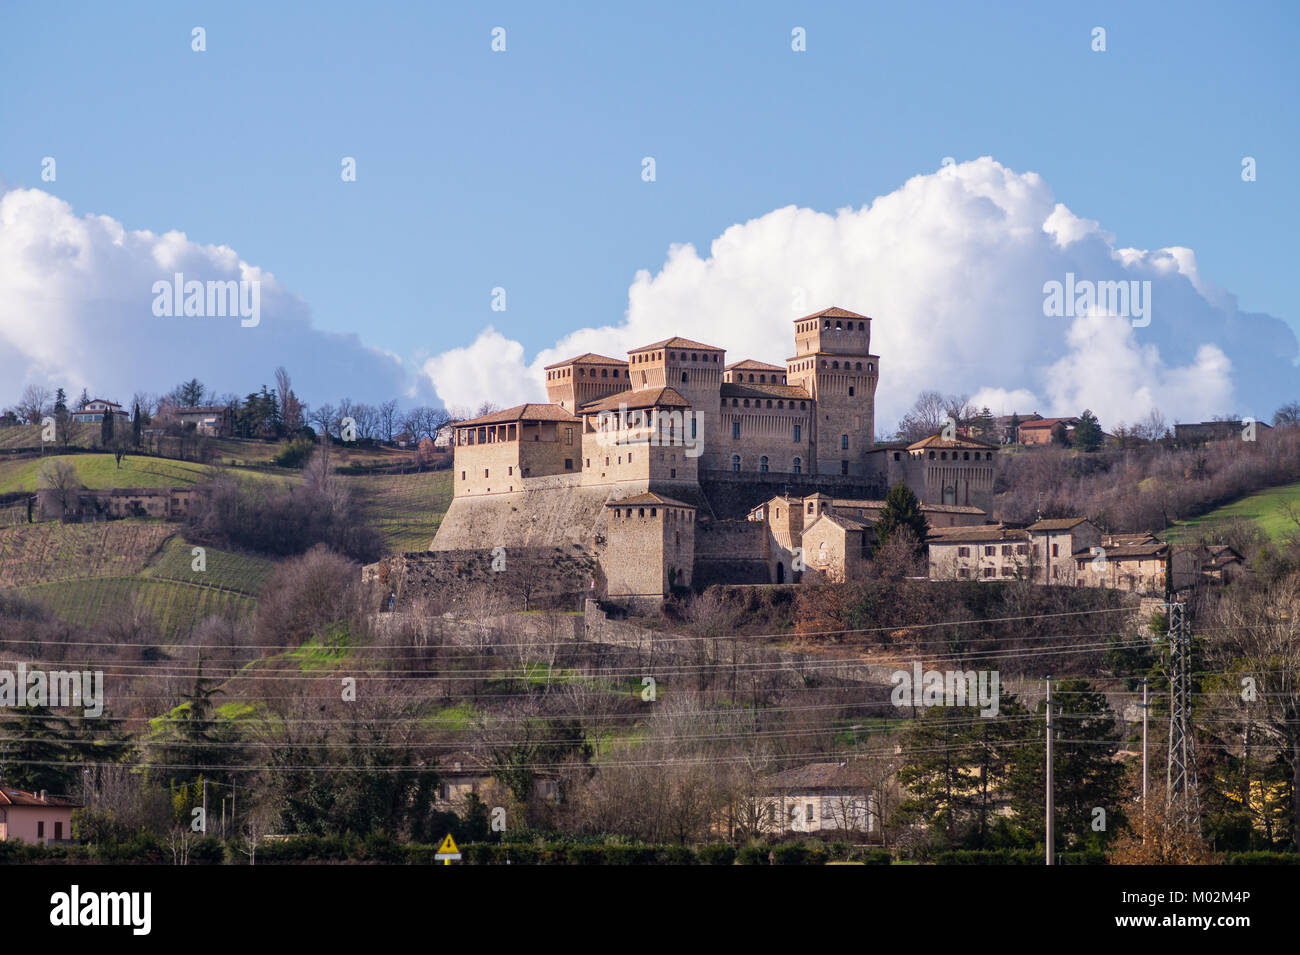 Castello di Torrechiara, XV secolo la fortezza medievale e palazzo a Langhirano vicino a Parma, regione Emilia Romagna, Italia settentrionale, vista esterna Foto Stock